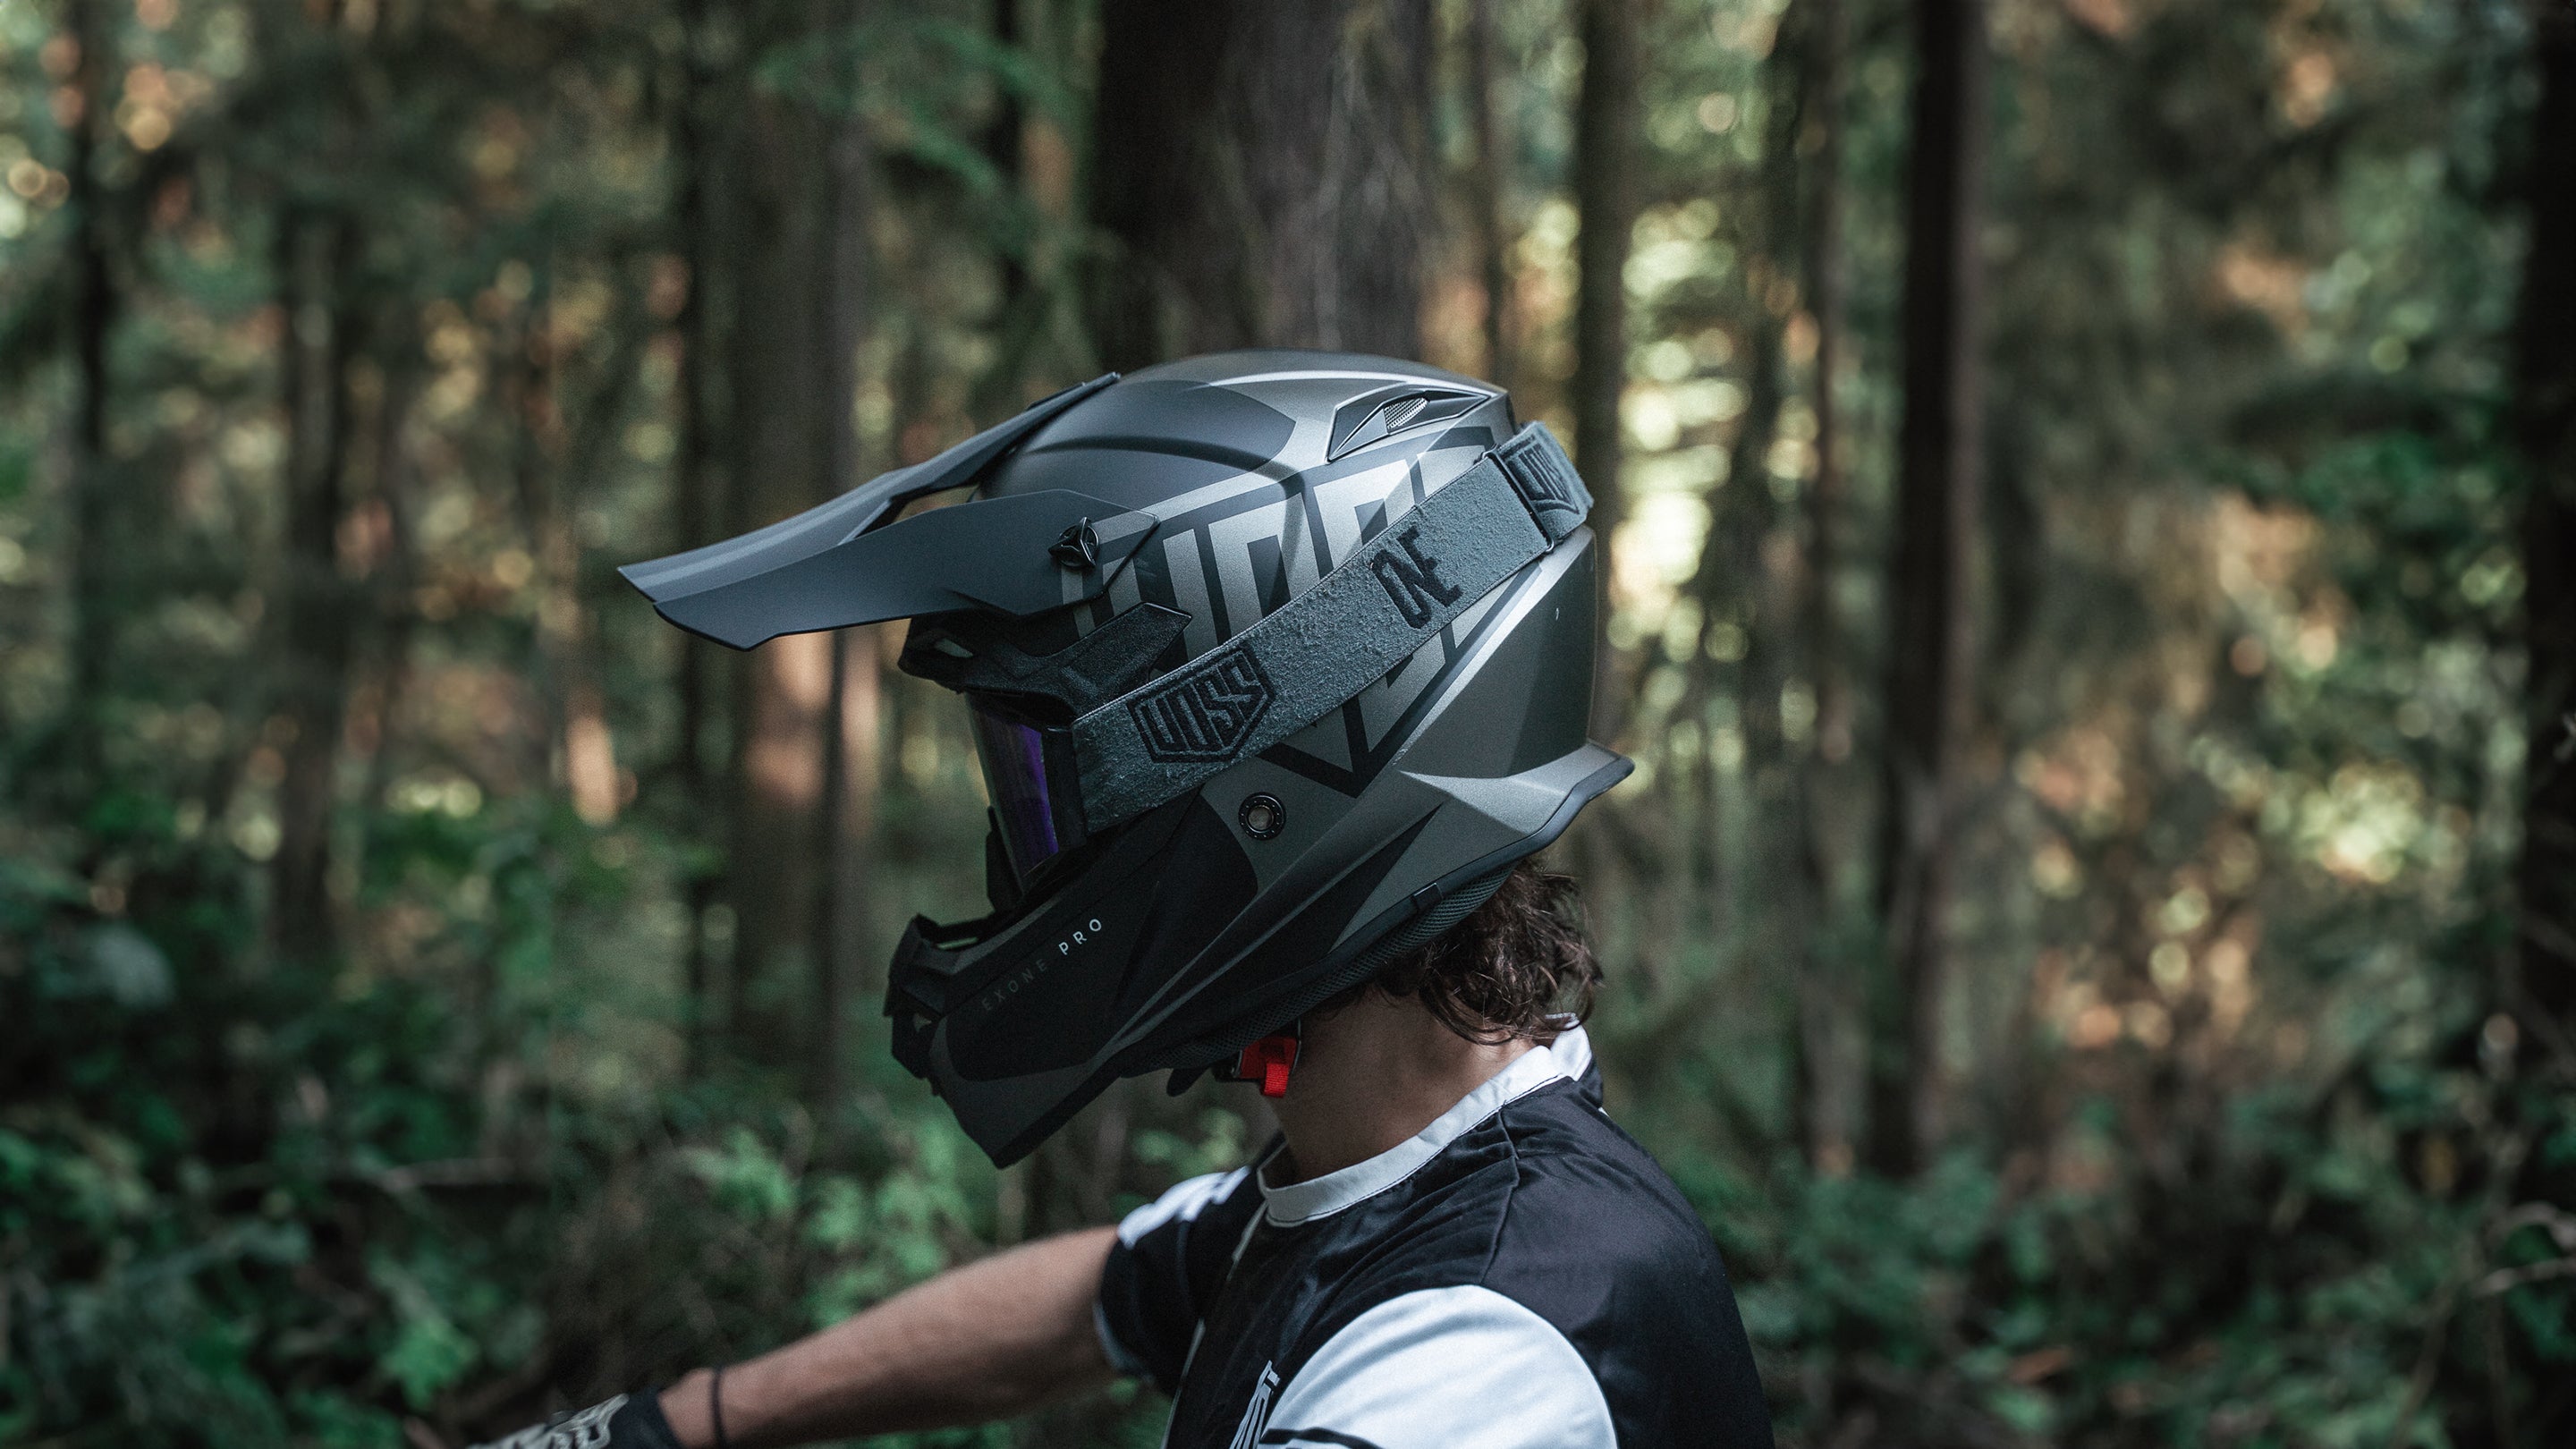 Dirt Bike Helmets